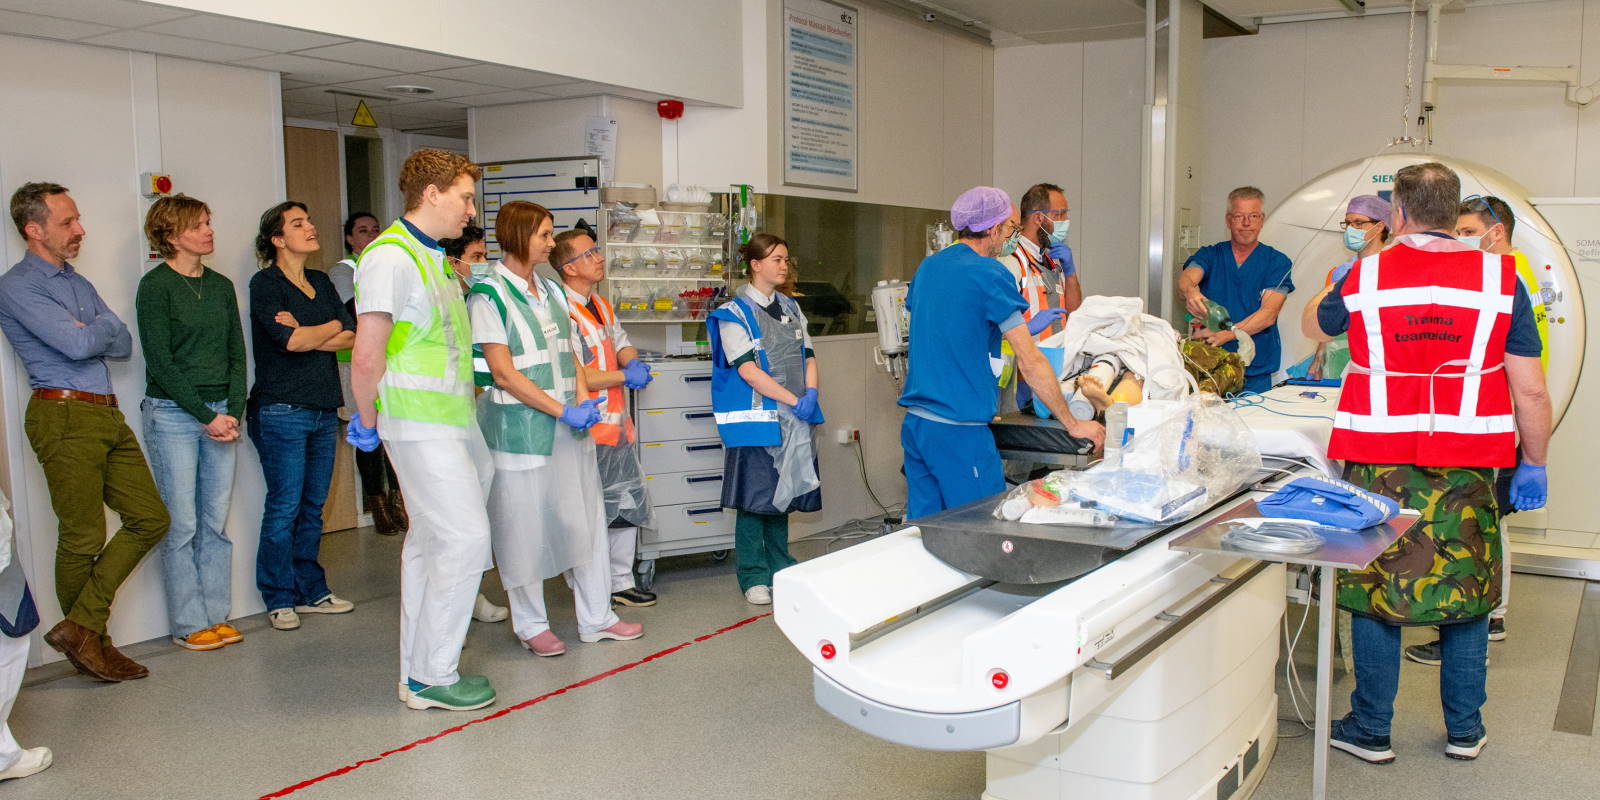 Het traumateam van het ETZ oefent onder toeziend oog van de collega’s van Radboudumc een complexe casus. Foto's: ETZ/Ellen den Ouden